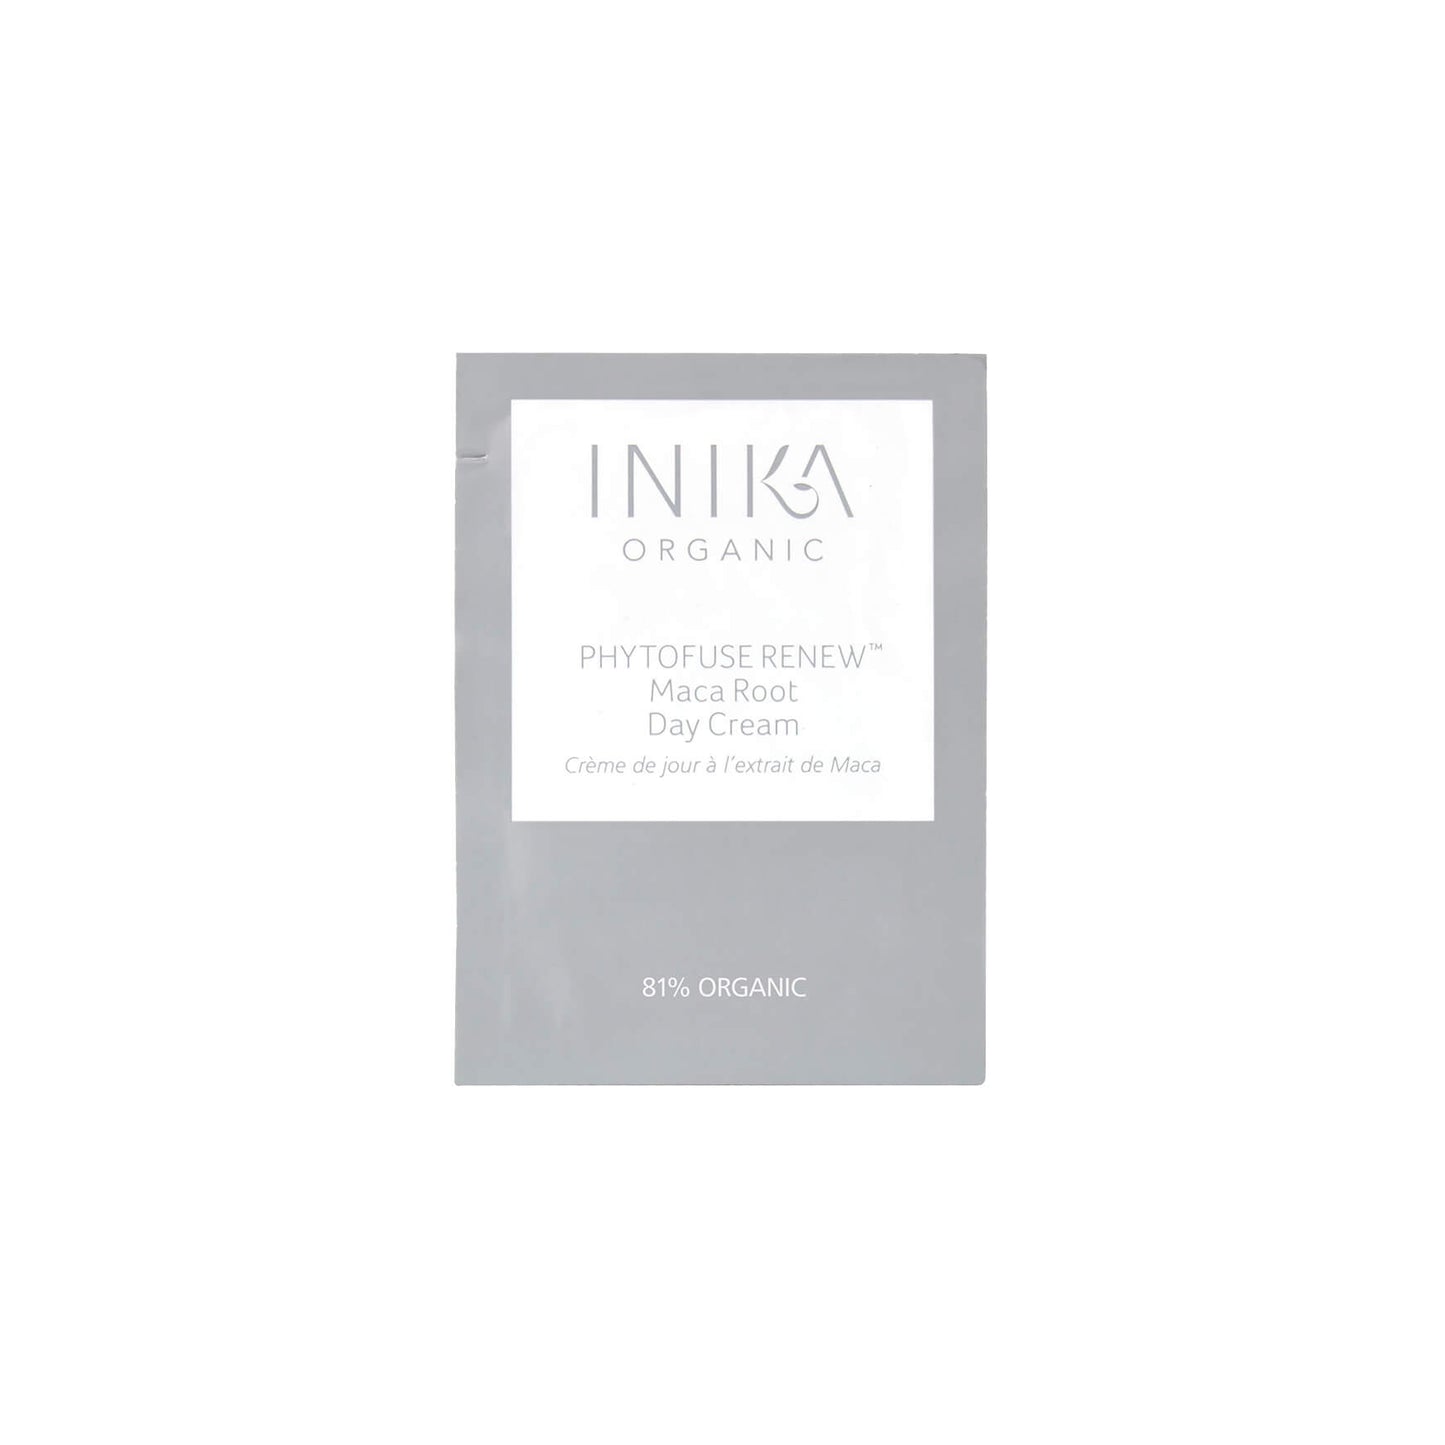 Day Cream 1.5ml (Sample) | INIKA Organic | 01